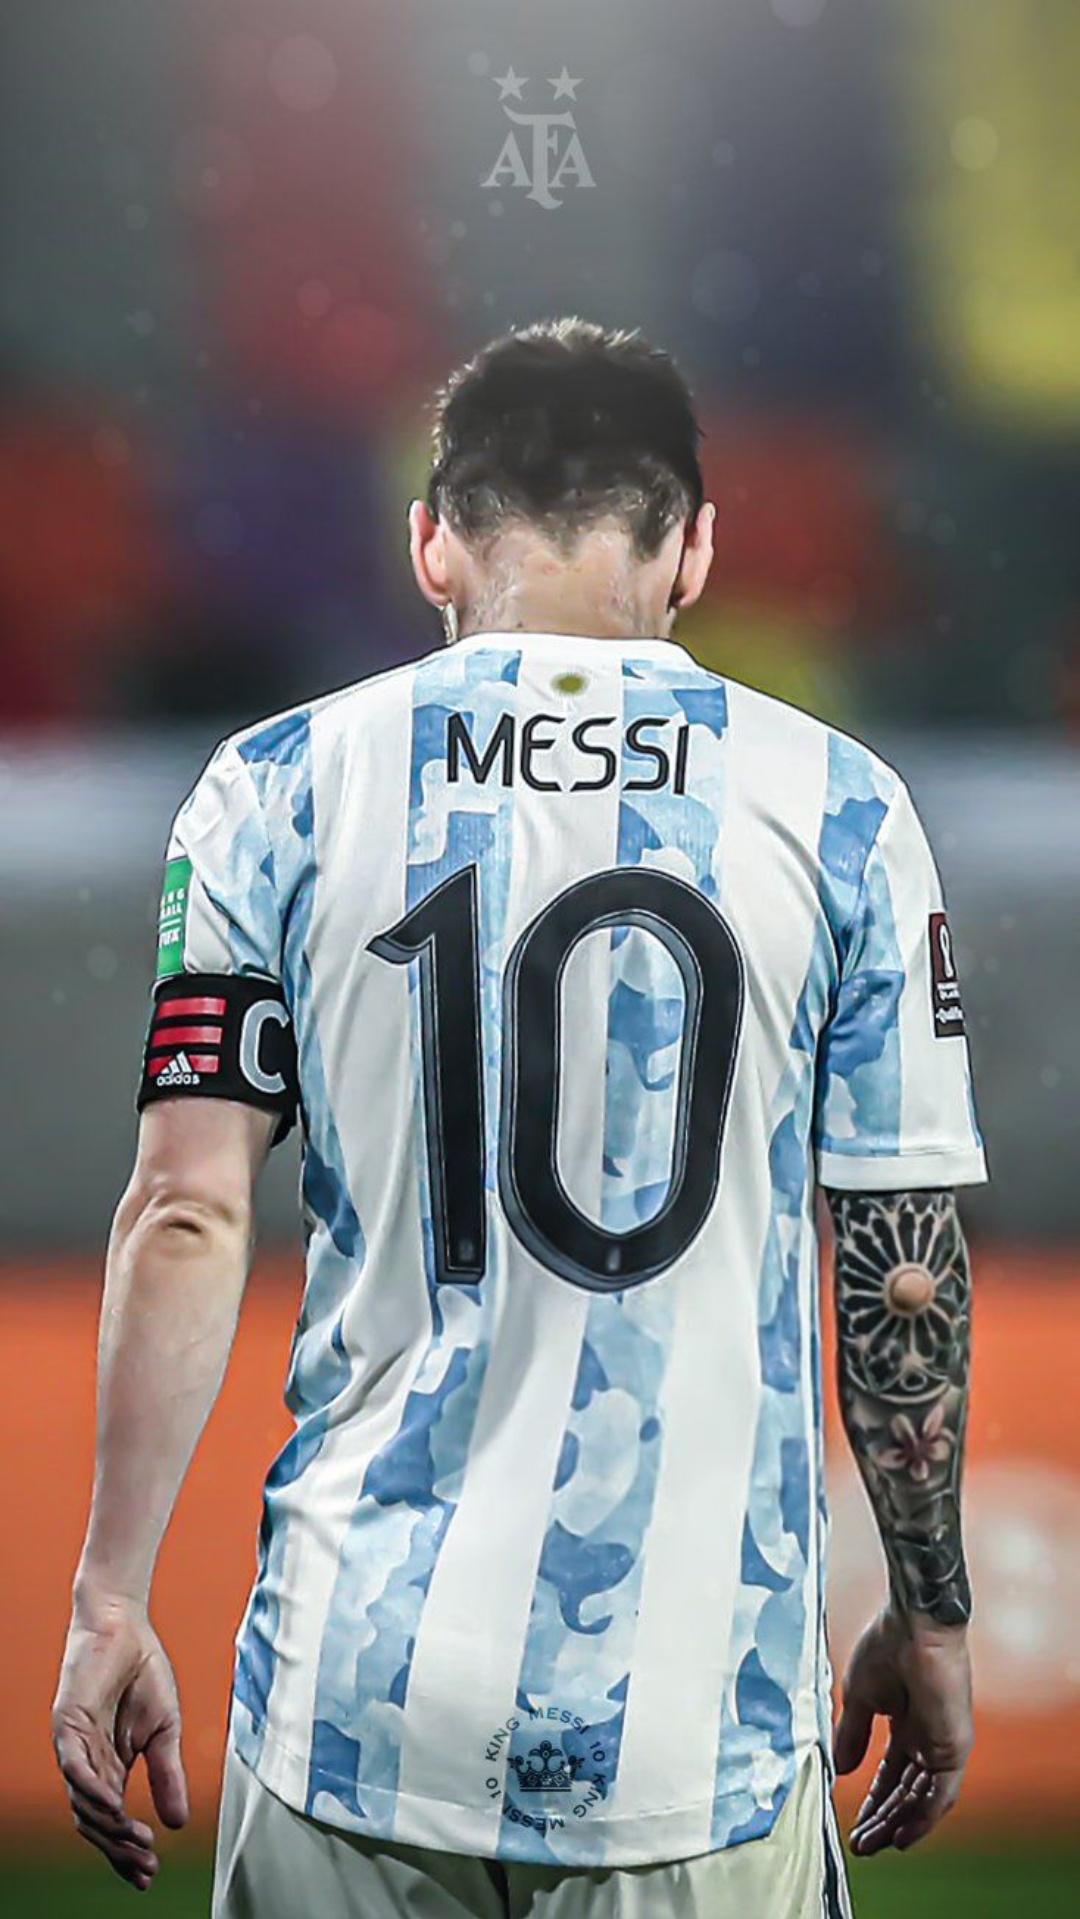 World Cup 2022 sắp đến rồi, và chúng ta không thể bỏ lỡ cơ hội để tìm kiếm những bức hình nền Messi đẹp mắt nhất. Hy vọng sẽ cùng Messi và đội tuyển Argentina có được nhiều chiến thắng ấn tượng trong giải đấu lần này!